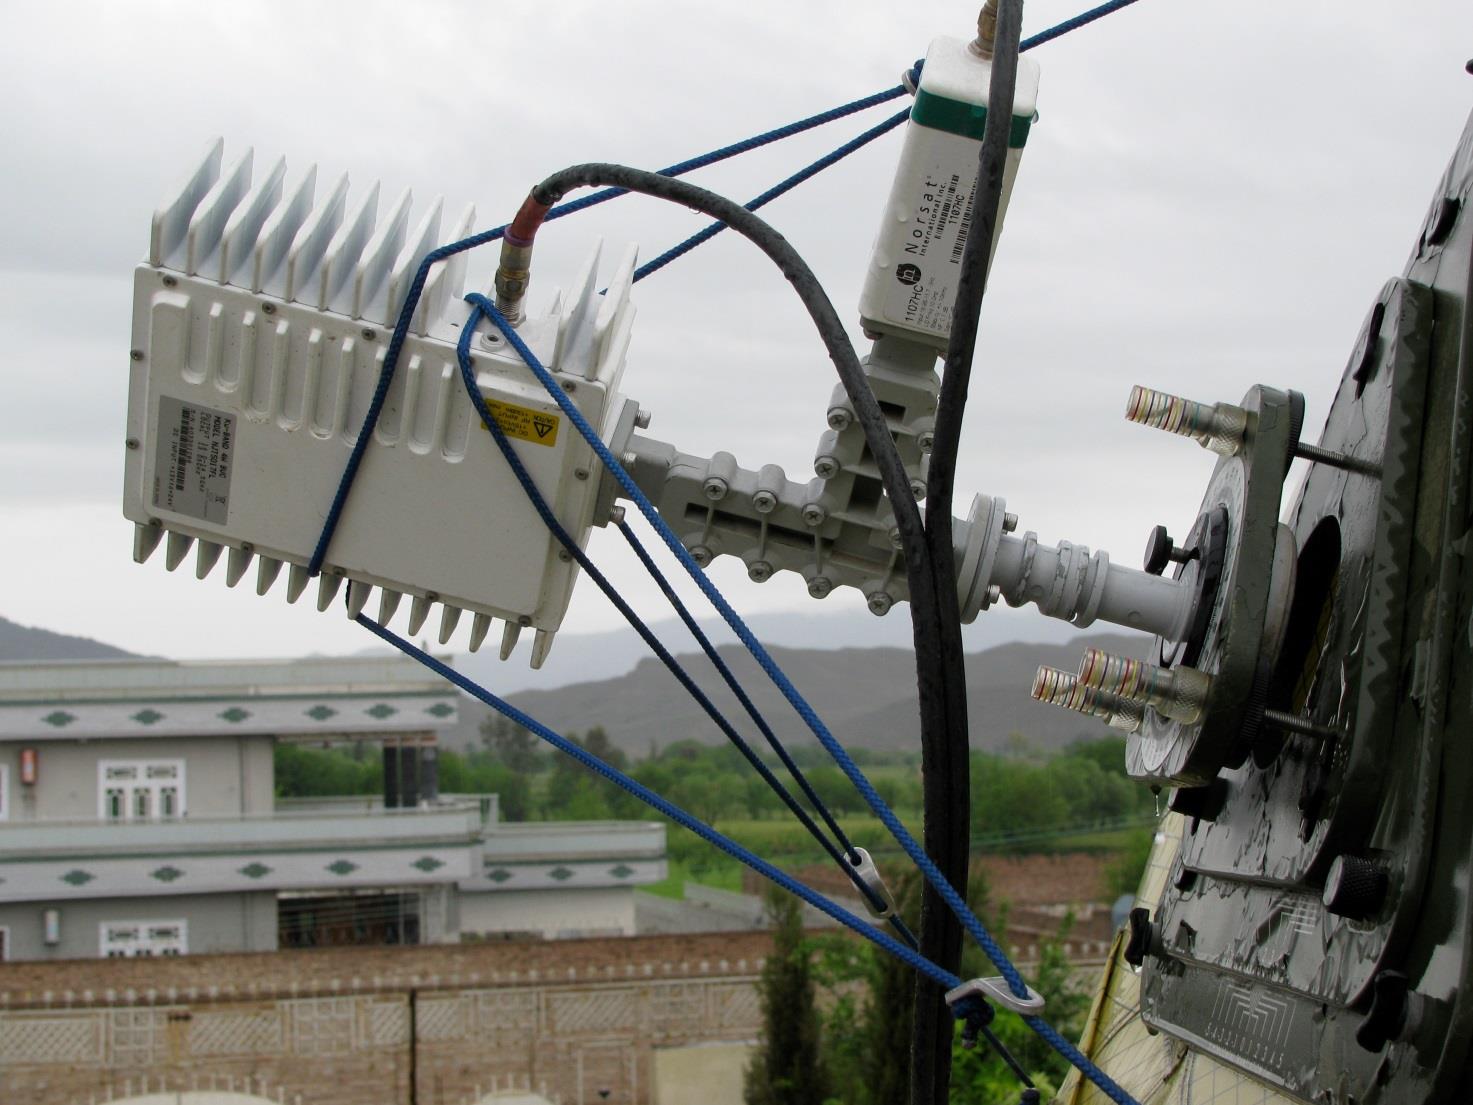 Antena plata este considerata o antena moderna, avand dimensiuni mici. Datorita prezentei semnalului prea slab in Romania, acest tip de antena este in general inutila la noi in tara.